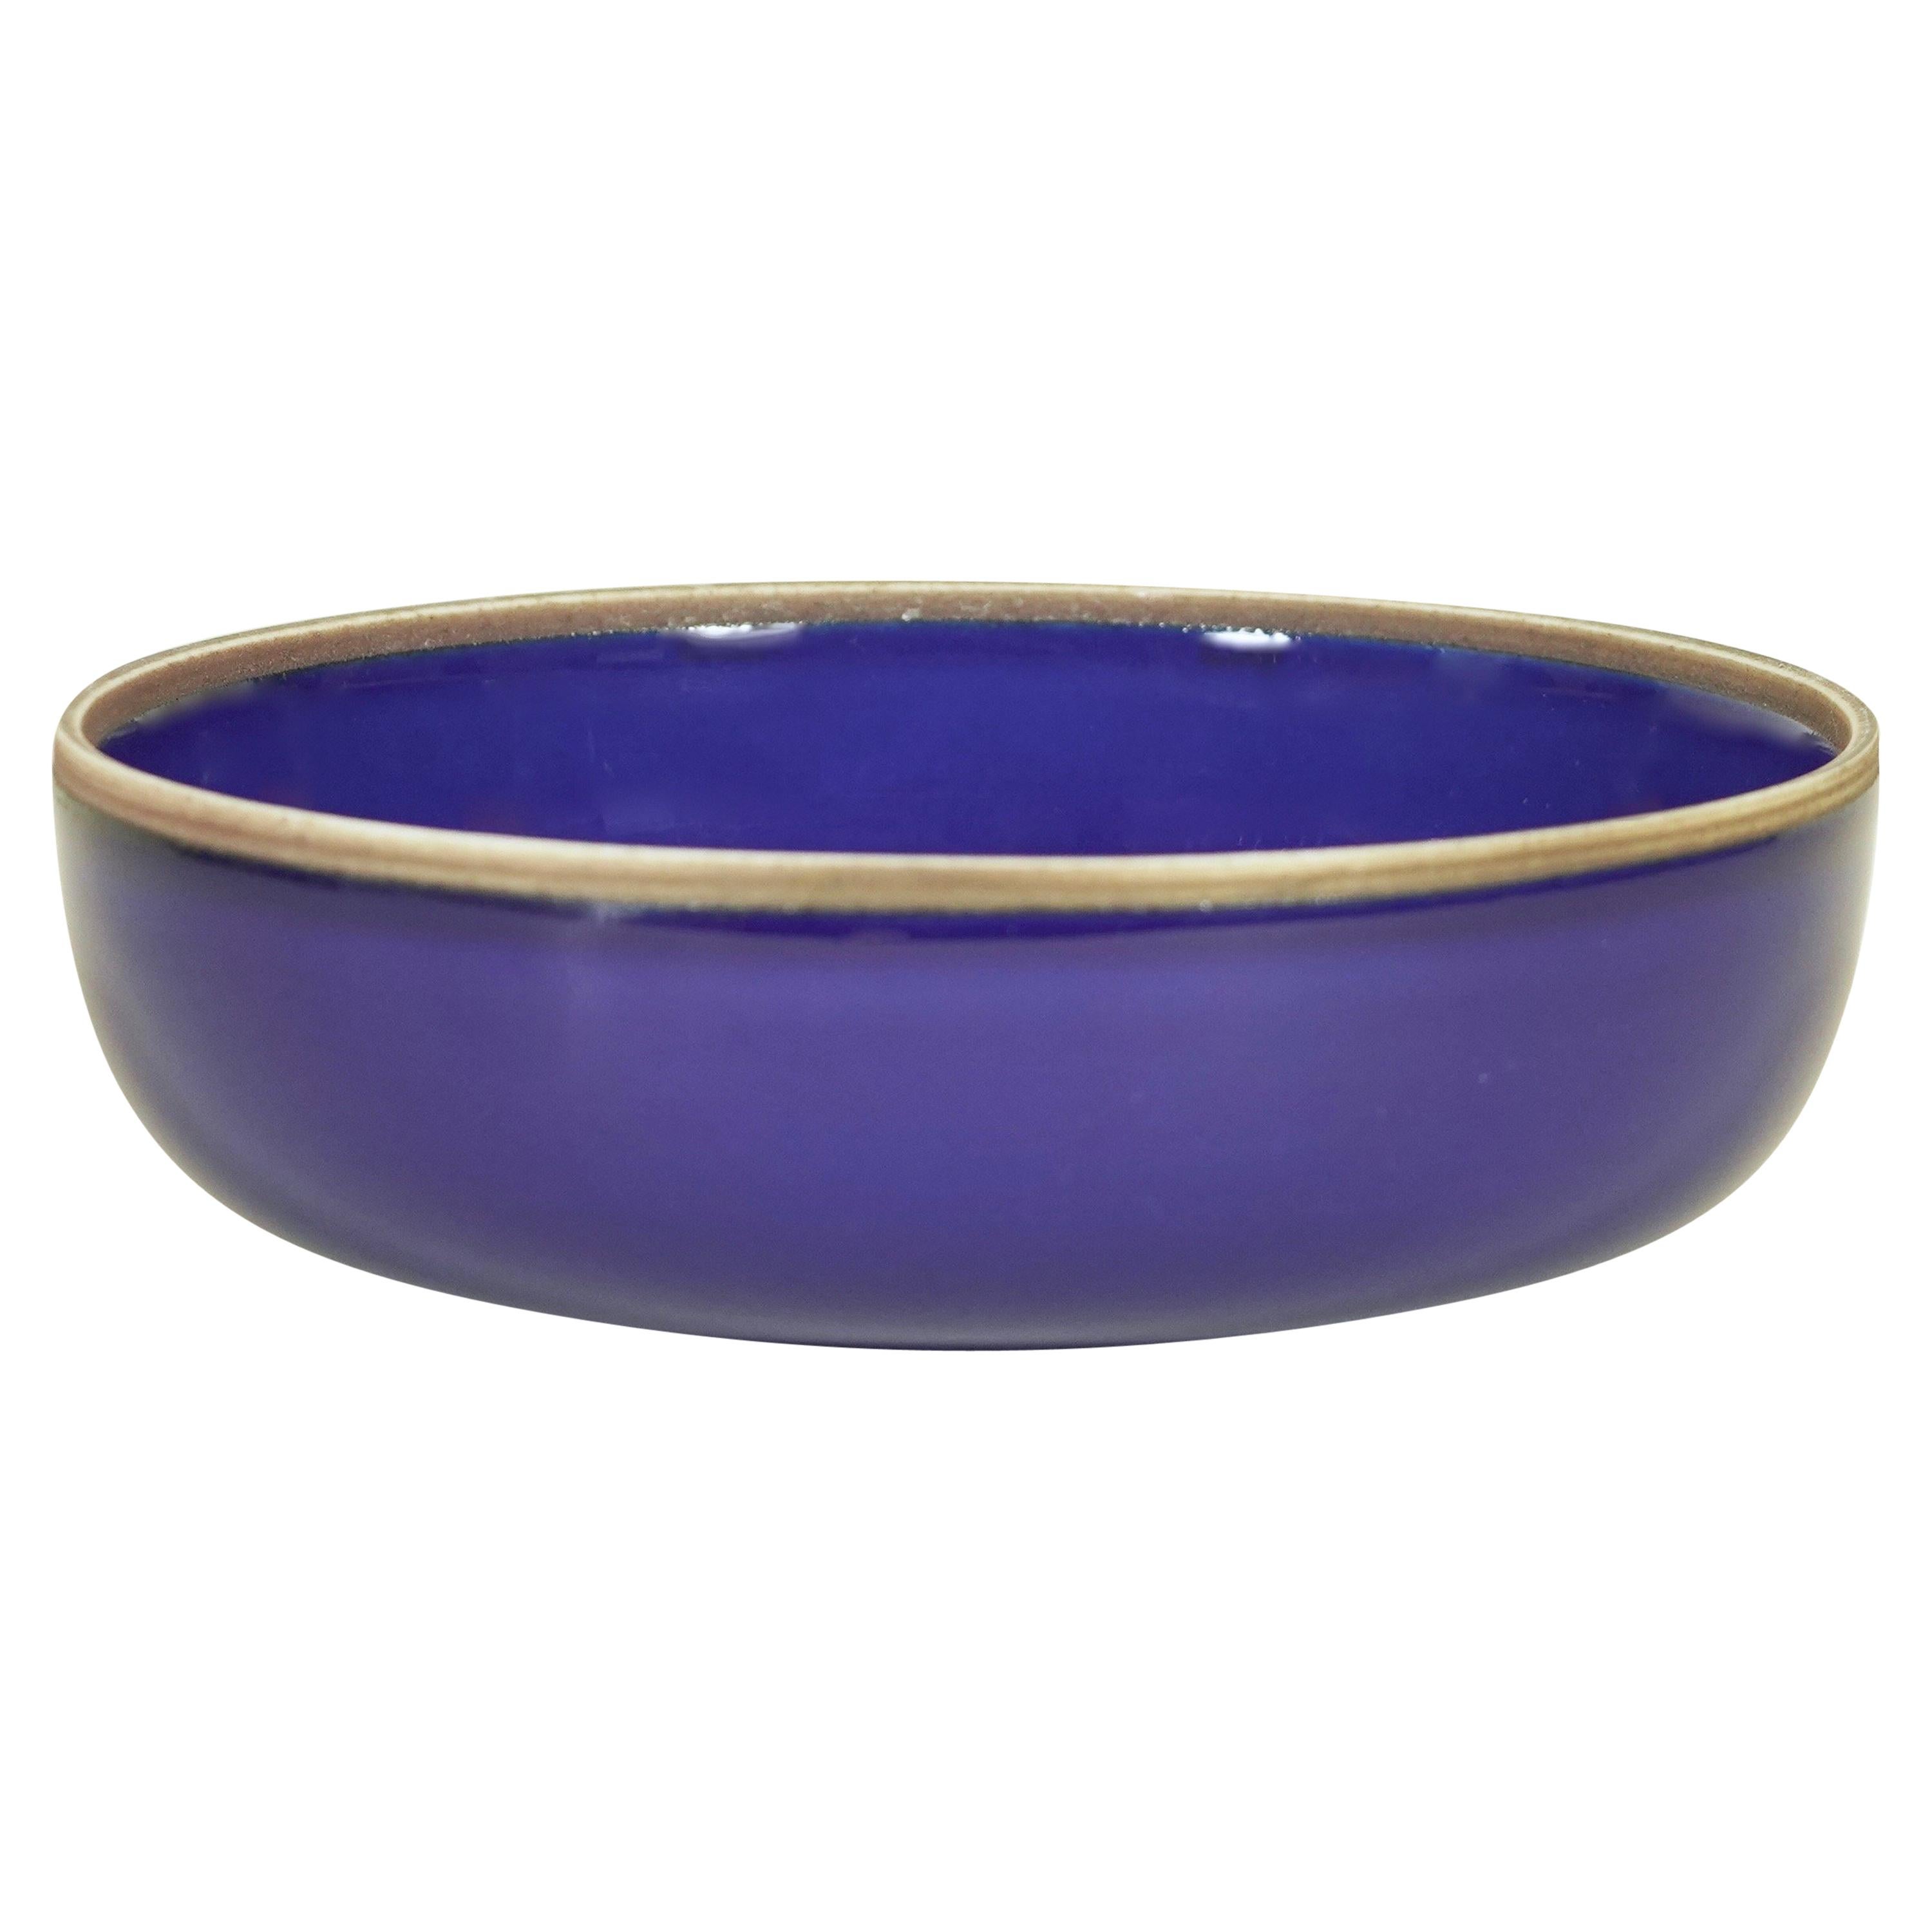 Medium Indigo Glazed Hermit Bowl with Rustic Rim